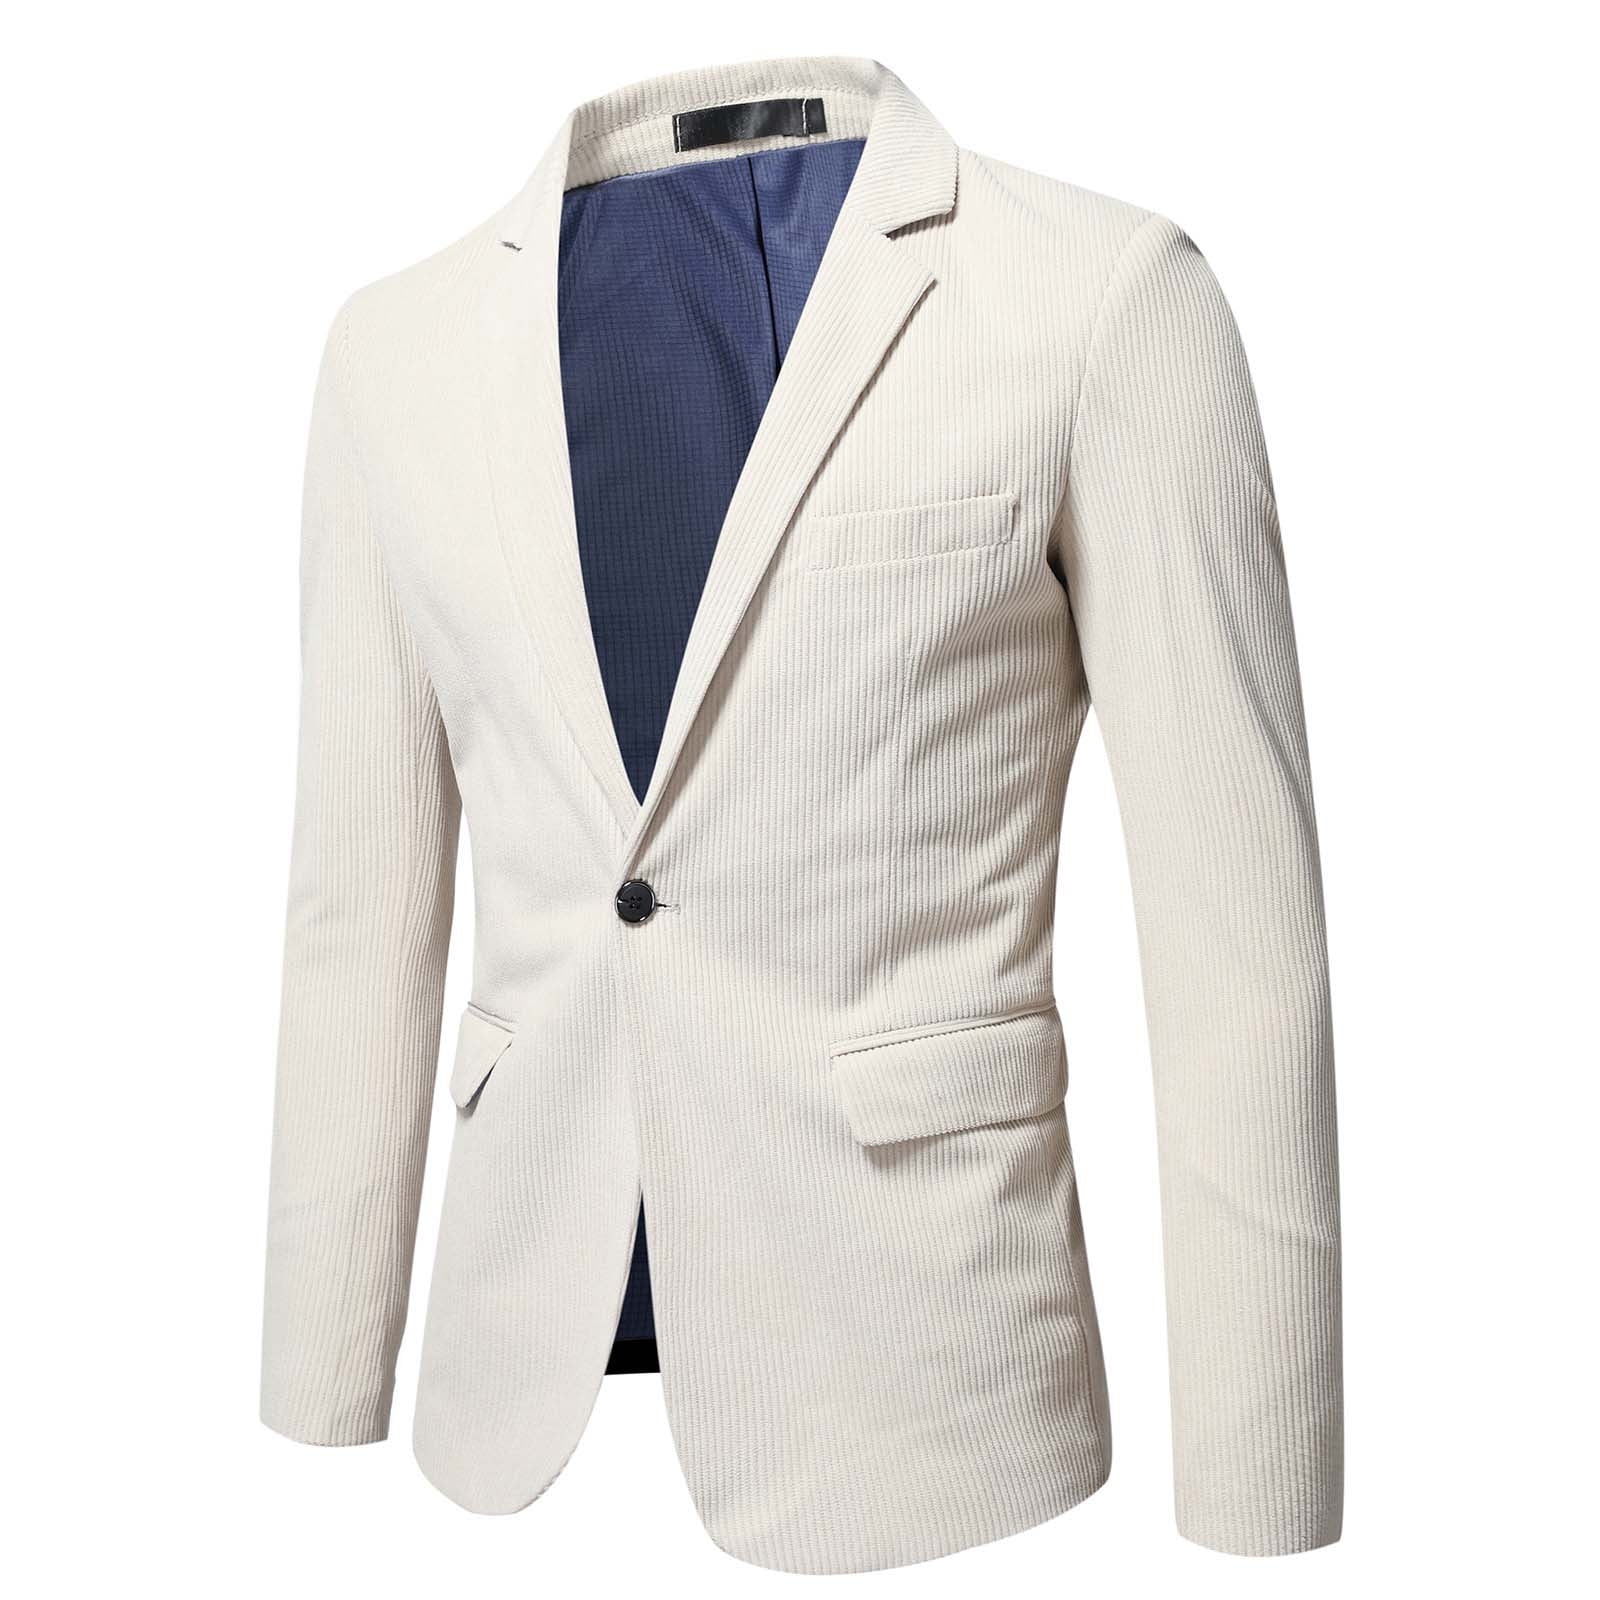 Zodggu Blazers Suit Jacket for Men Office Lightweight Lapel Collar